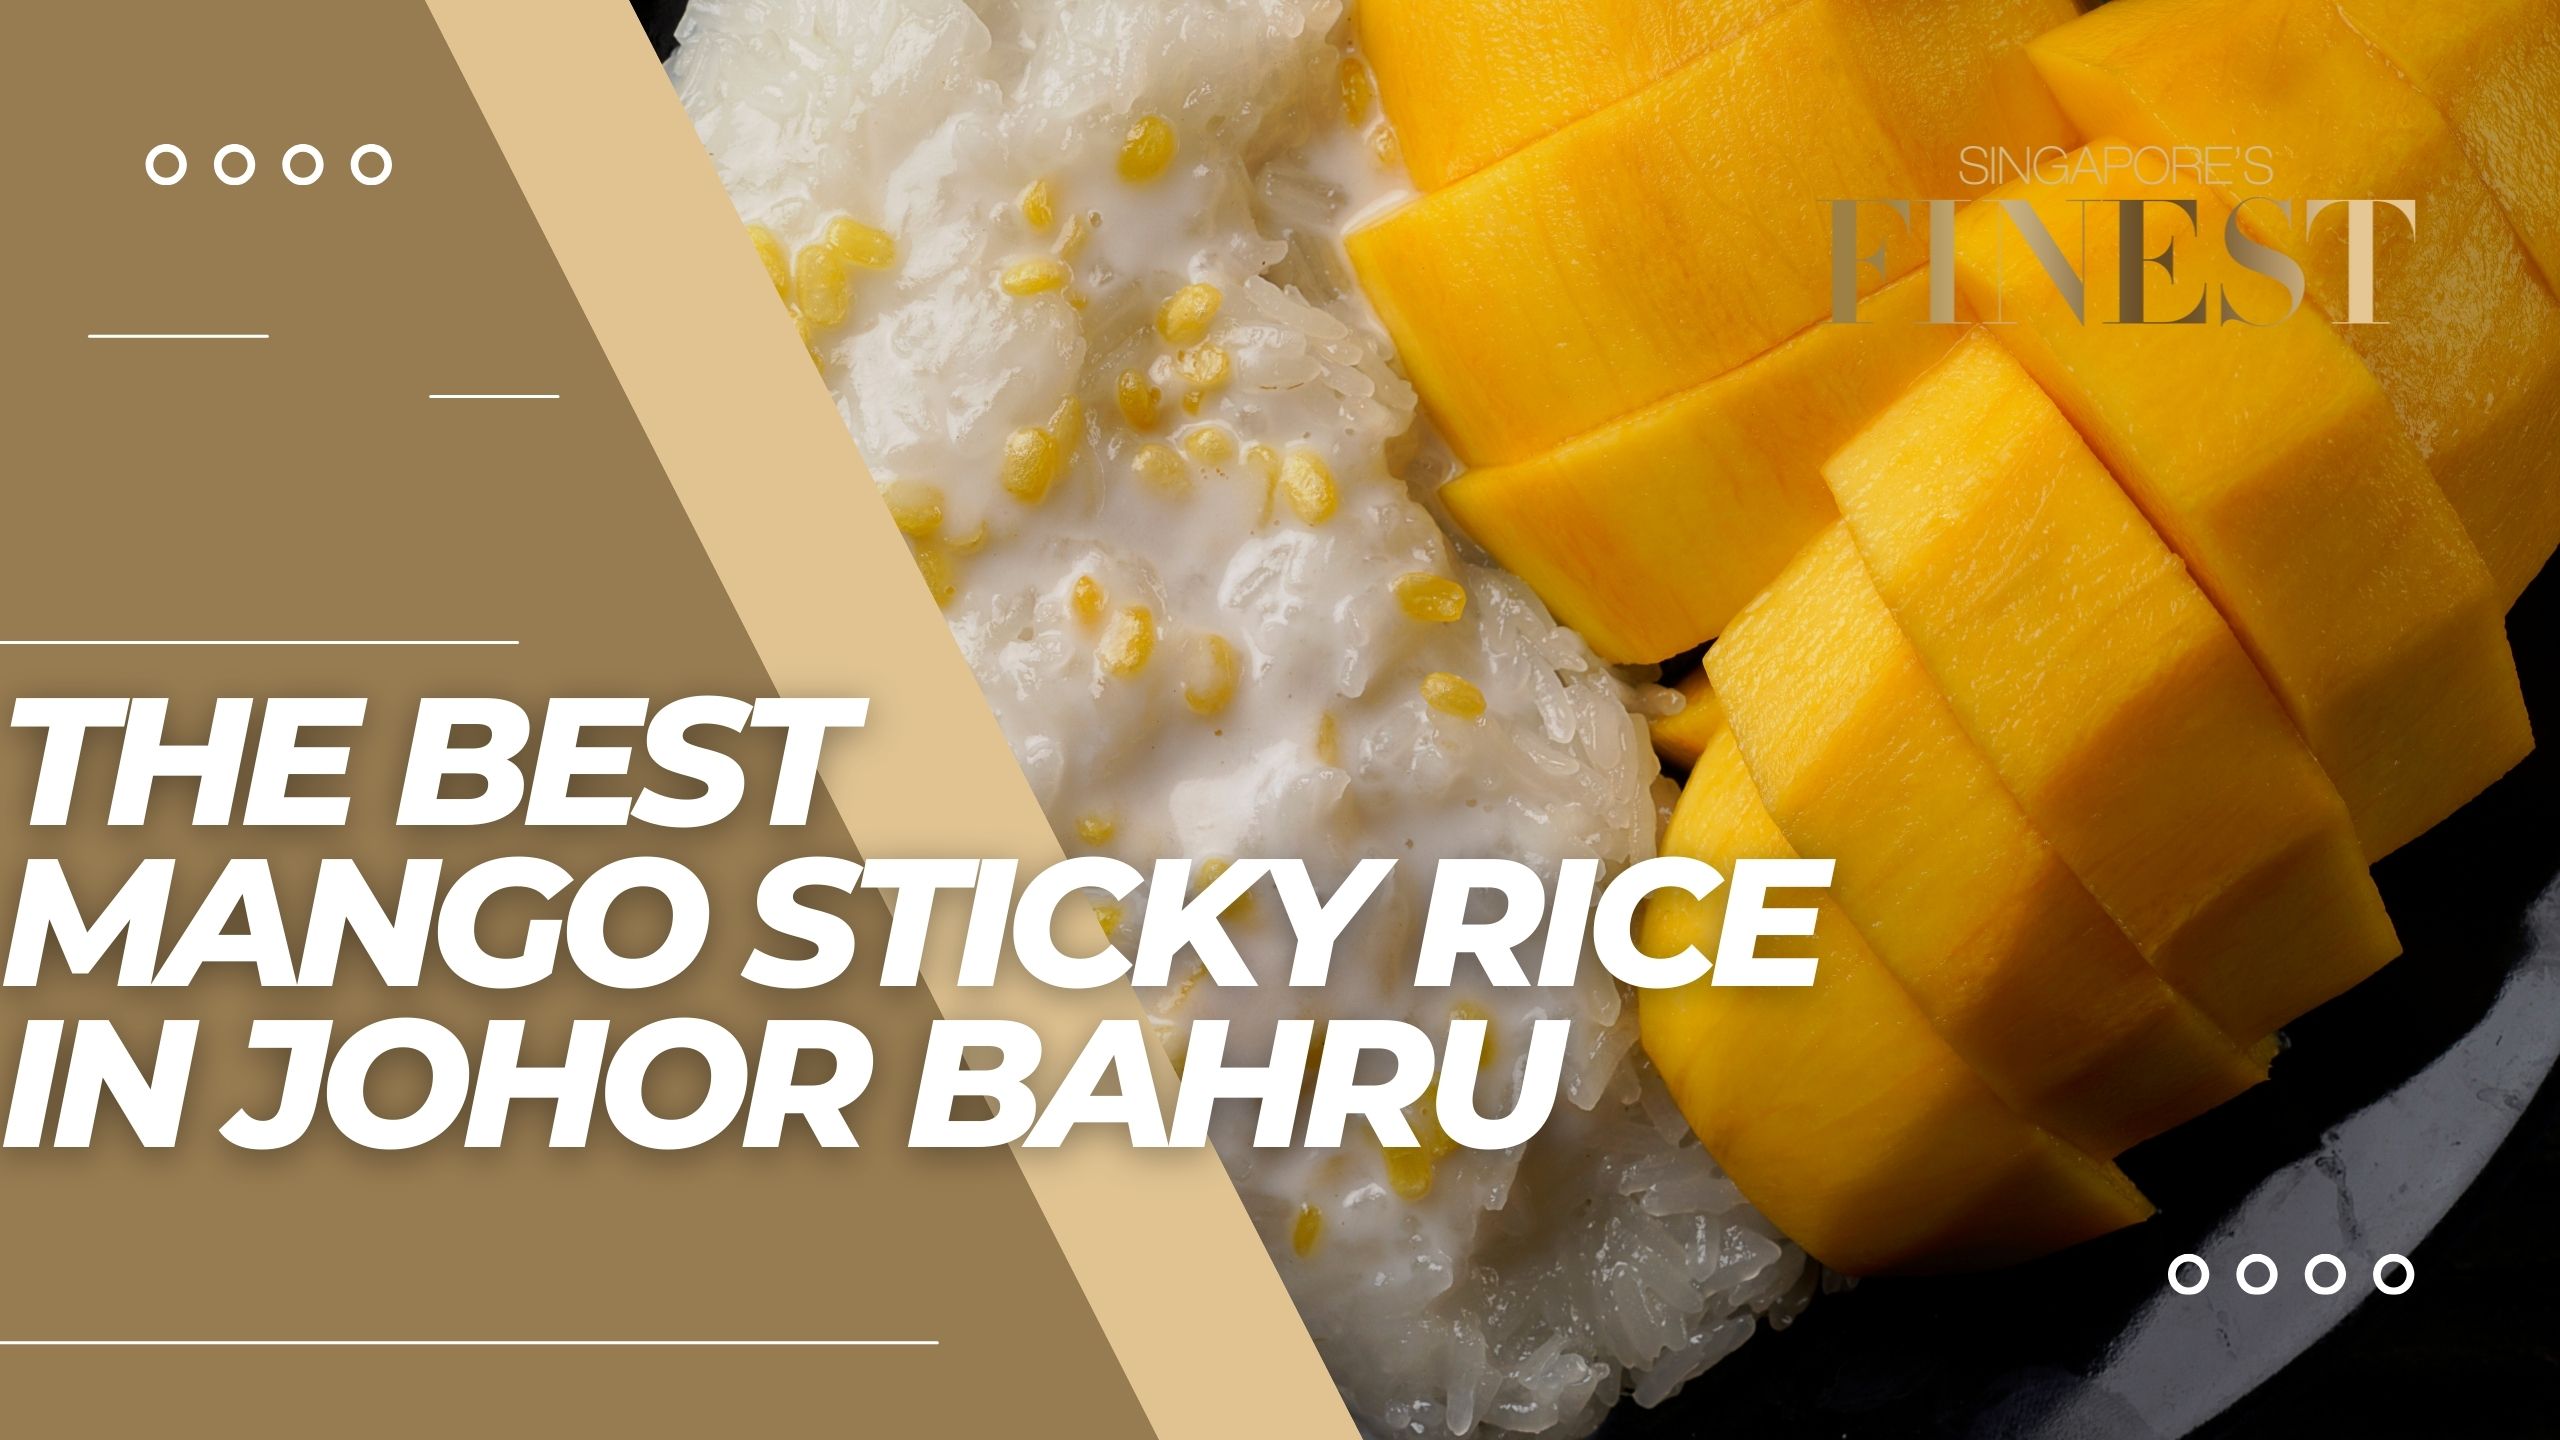 The Finest Mango Sticky Rice in Johor Bahru